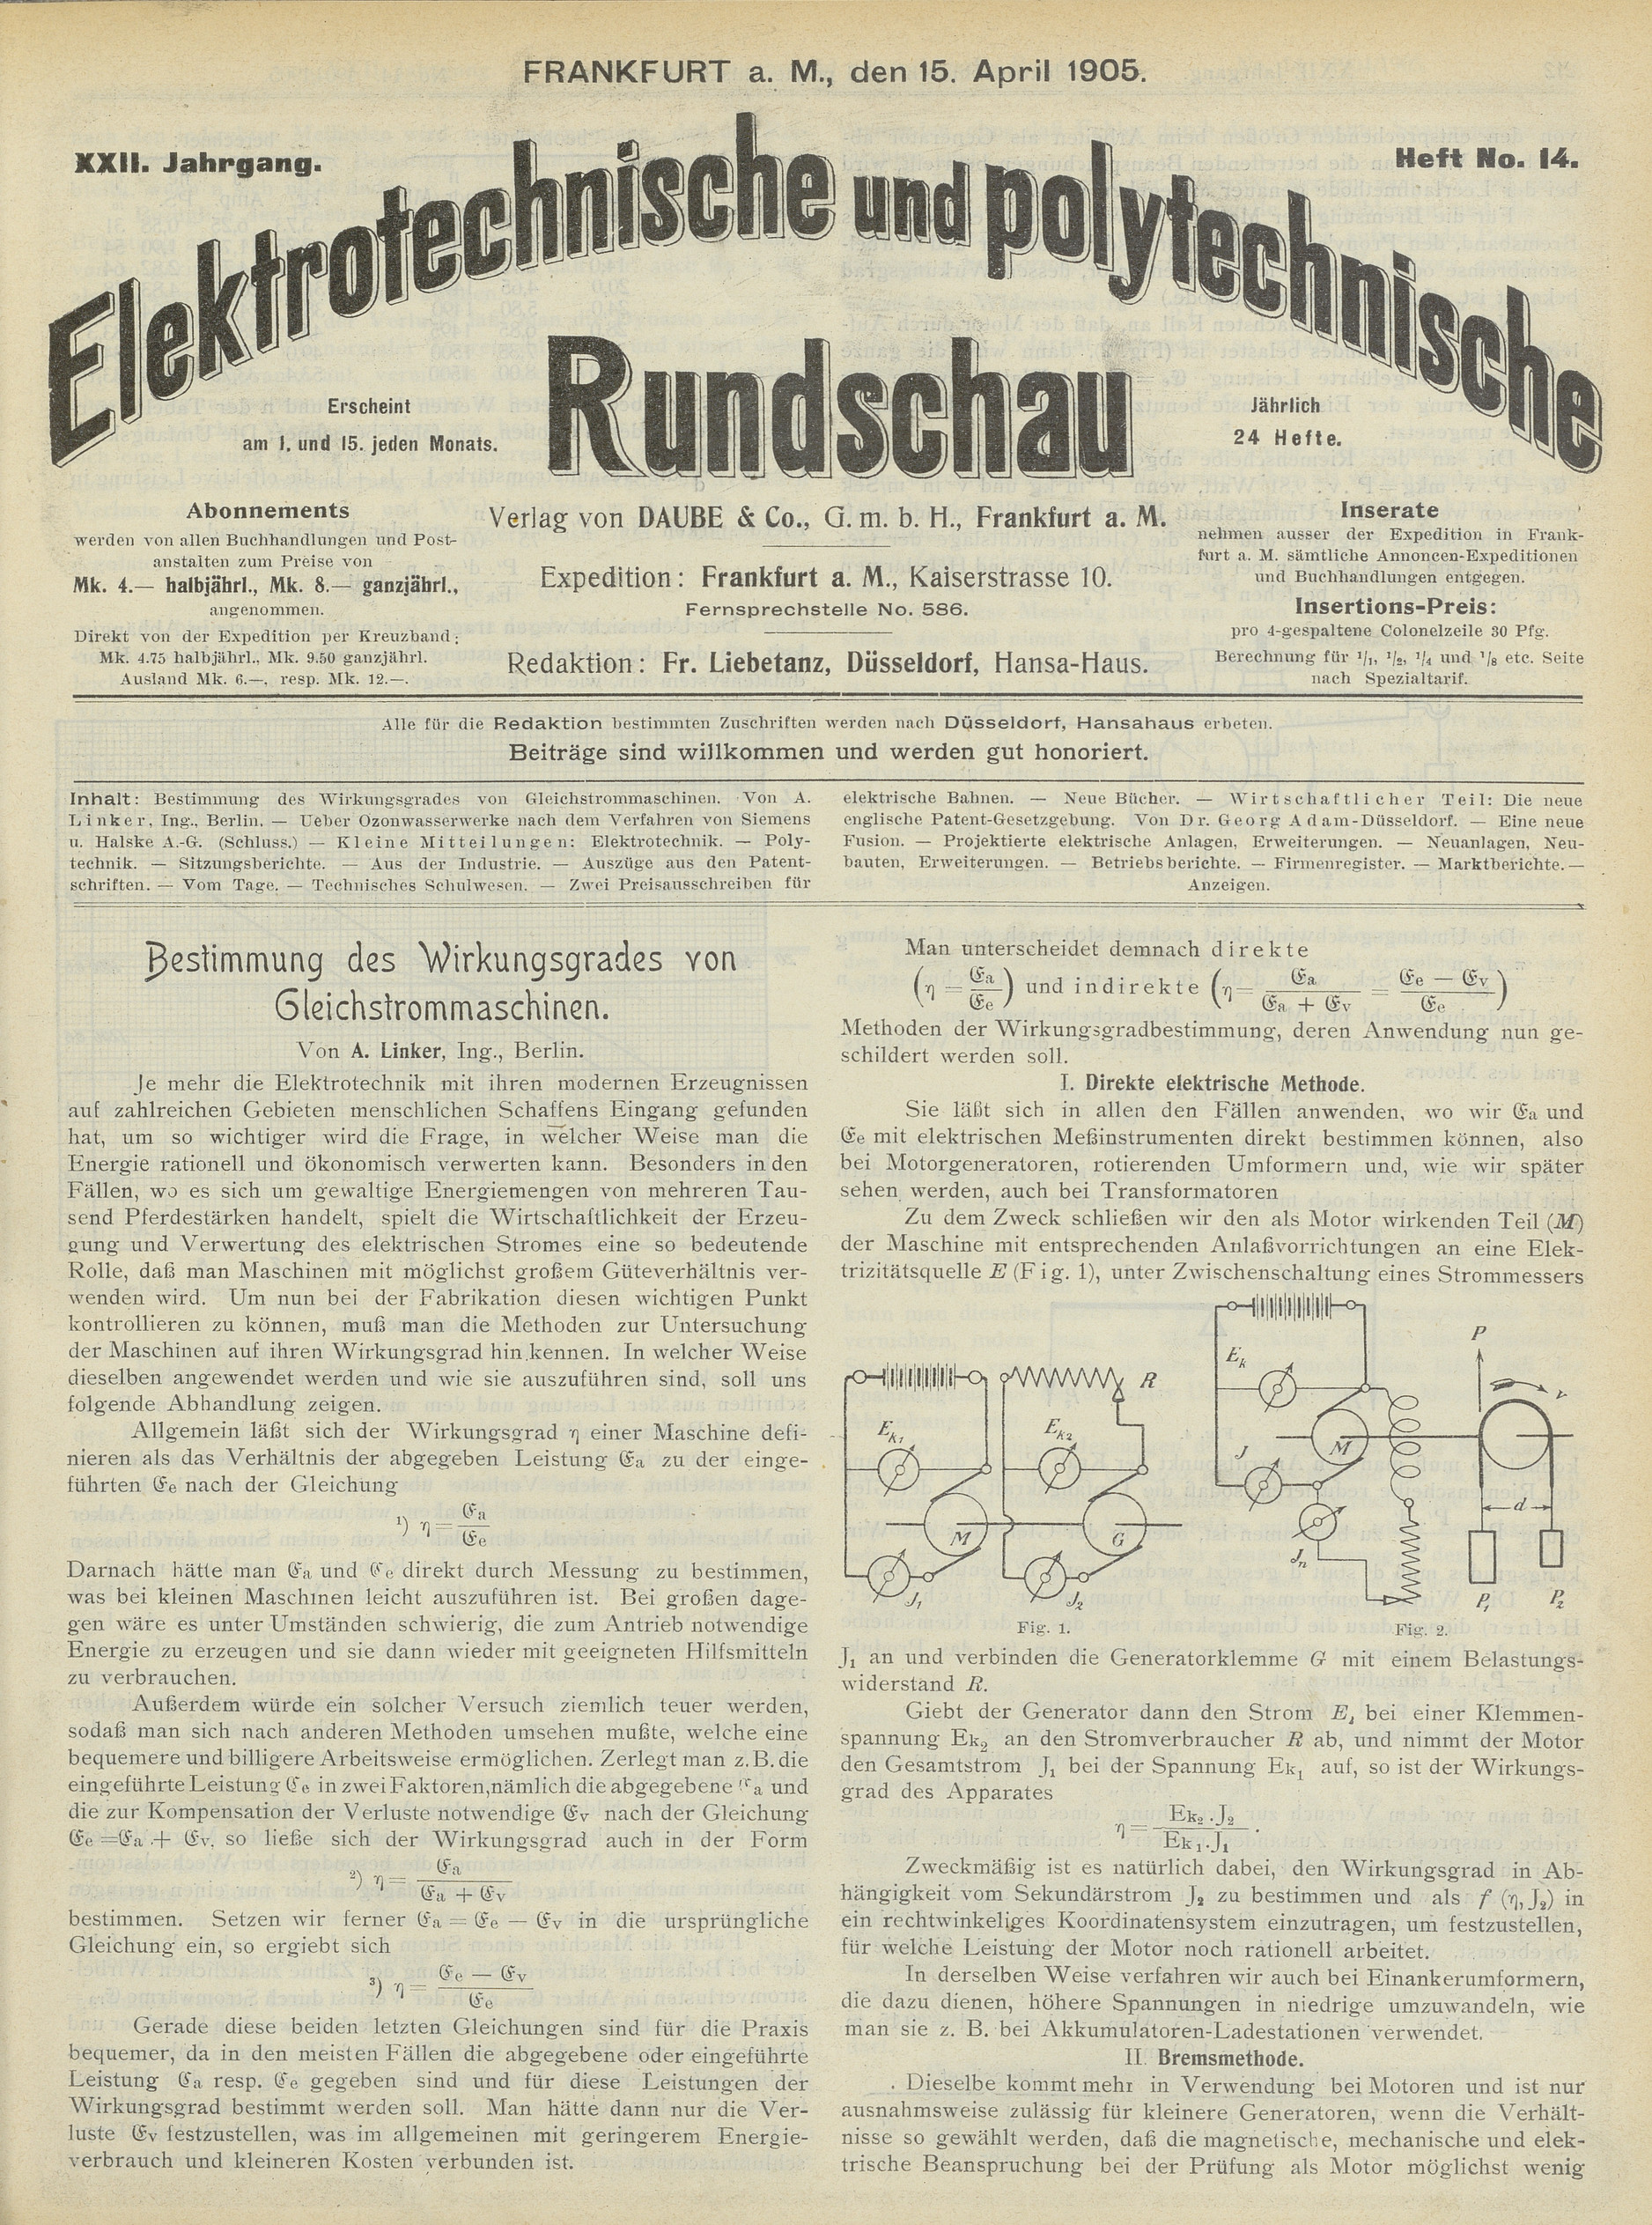 Elektrotechnische und polytechnische Rundschau, XXII. Jahrgang, Heft No. 14